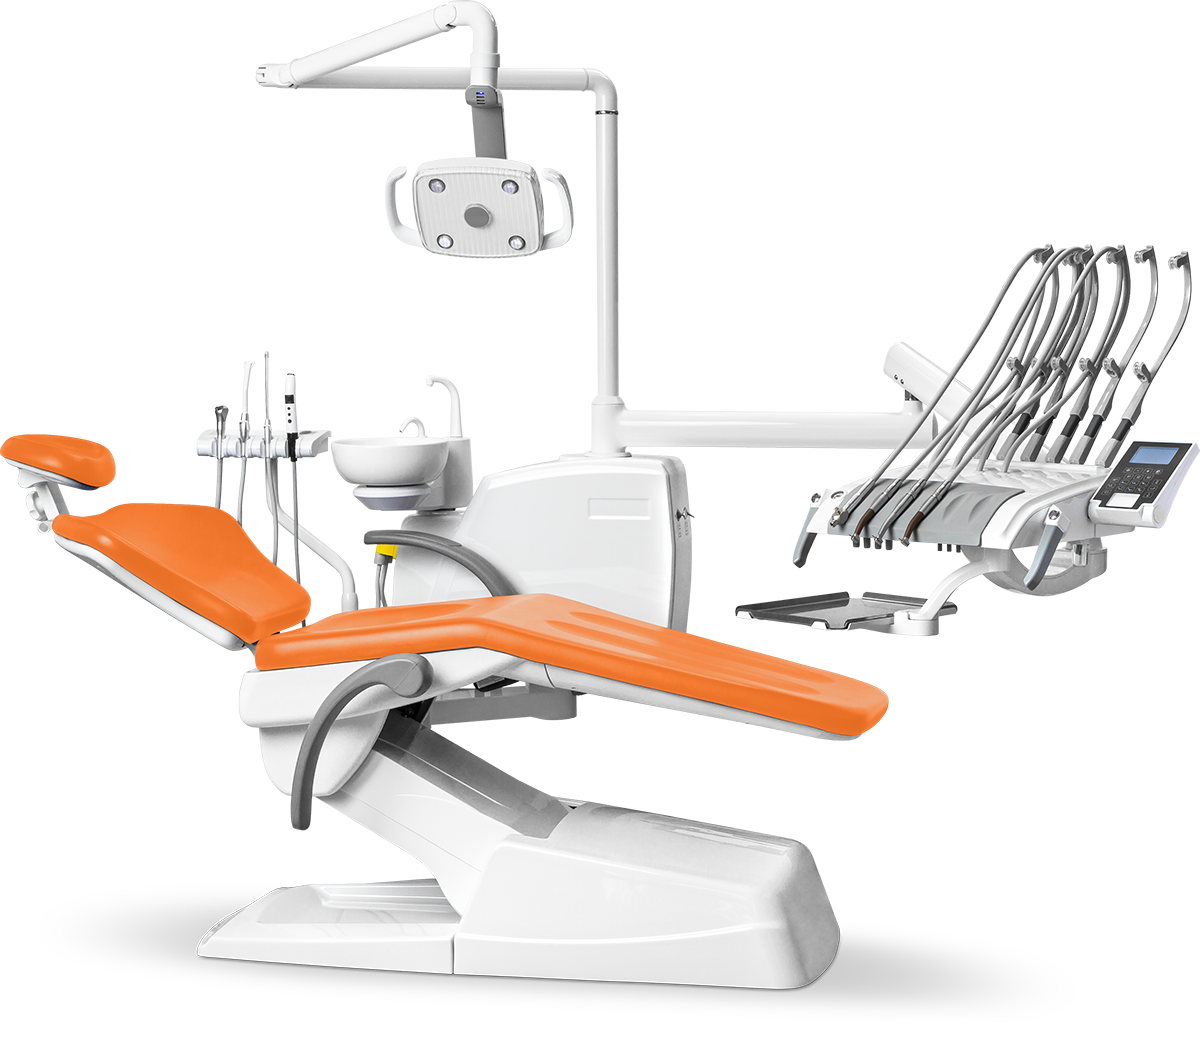  Стоматологическая установка Mercury 330 стандарт верхняя подача, Оранжевый